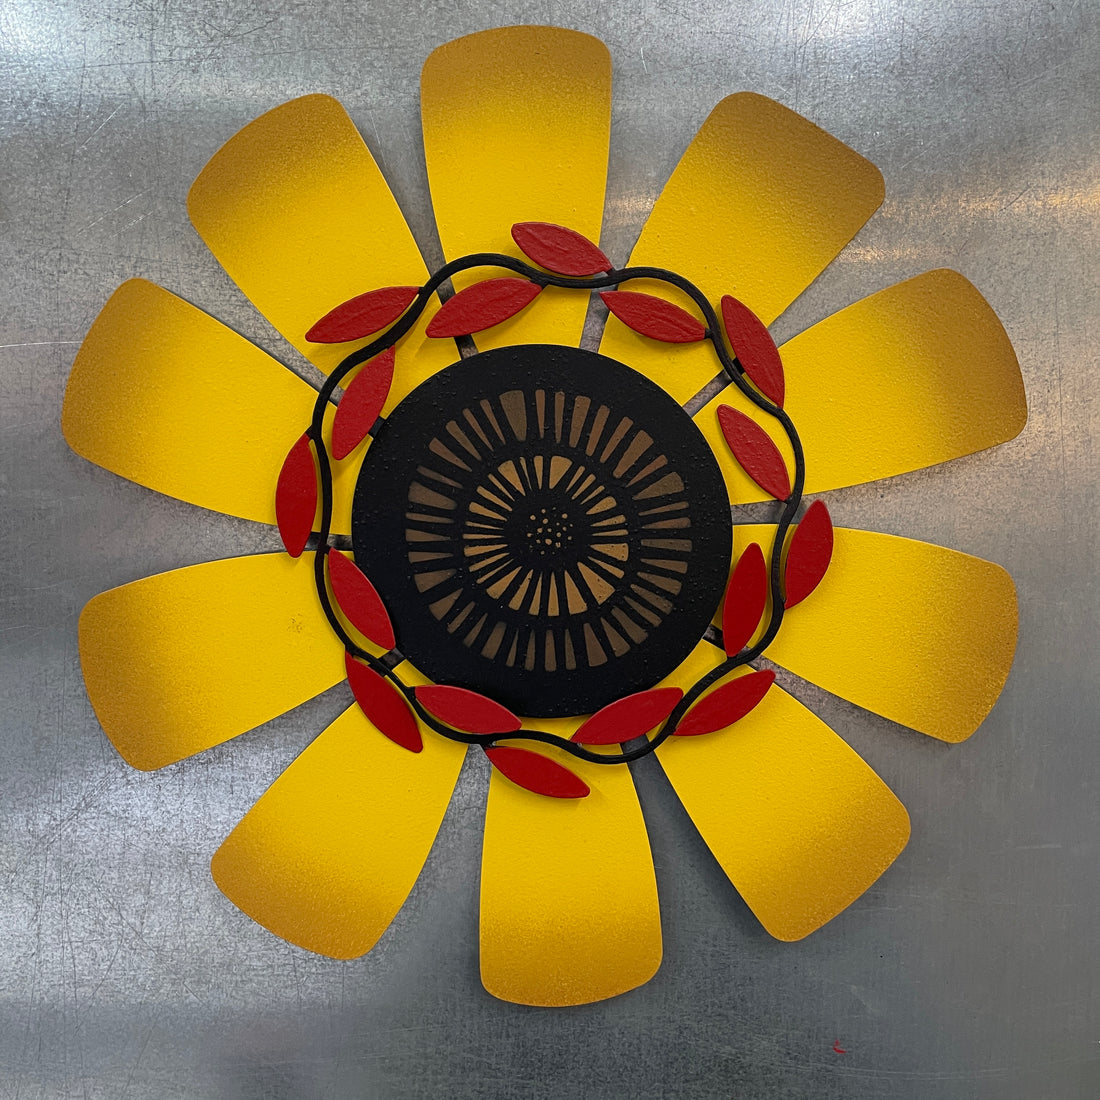 Sunflower Workshop - September 19